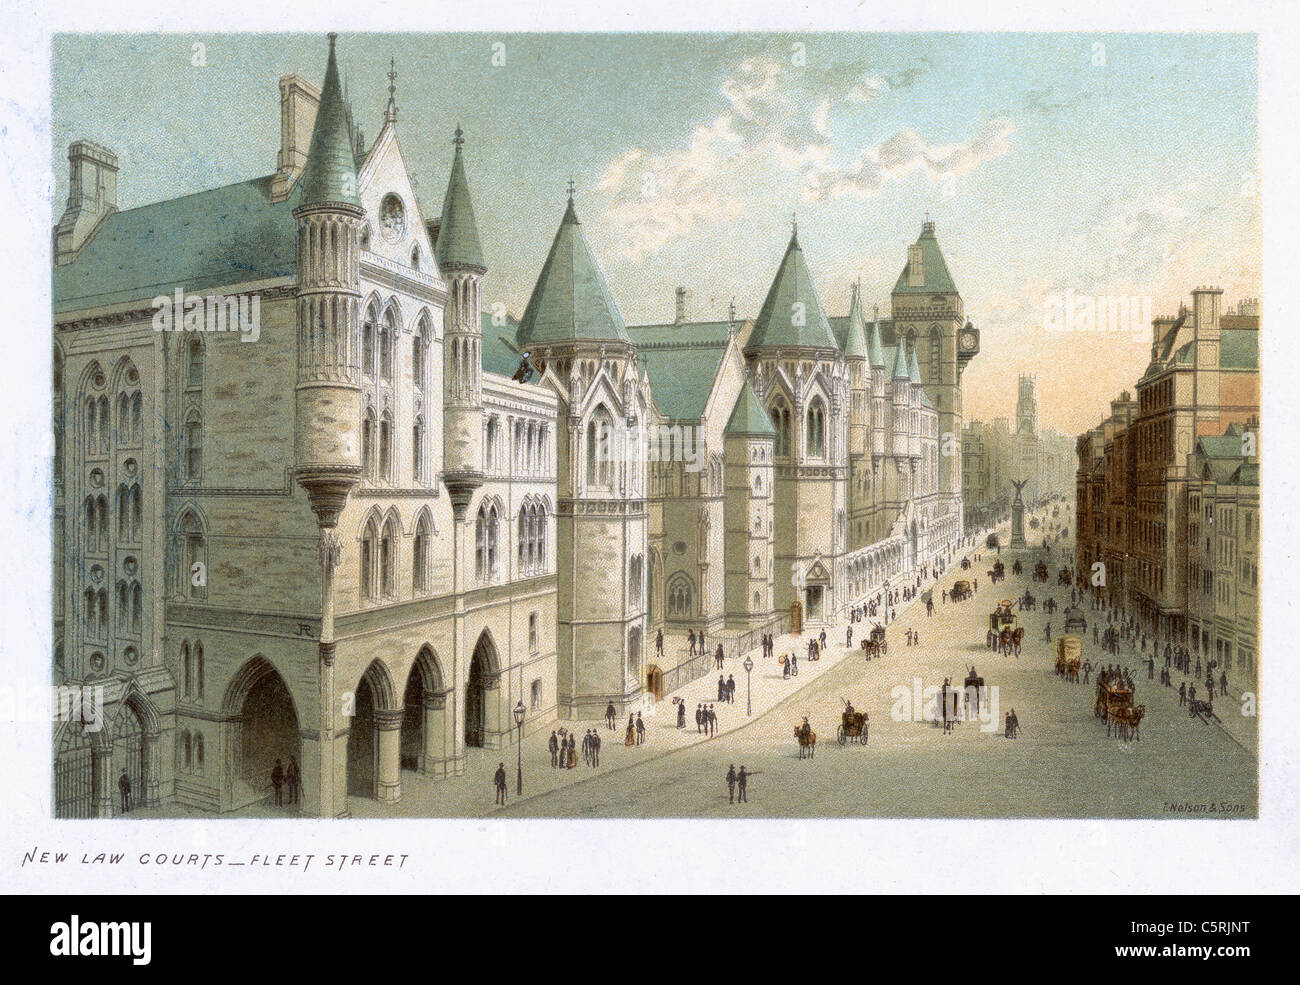 Nuova legge tribunali, Fleet Street, Londra, Inghilterra nel XIX secolo Foto Stock